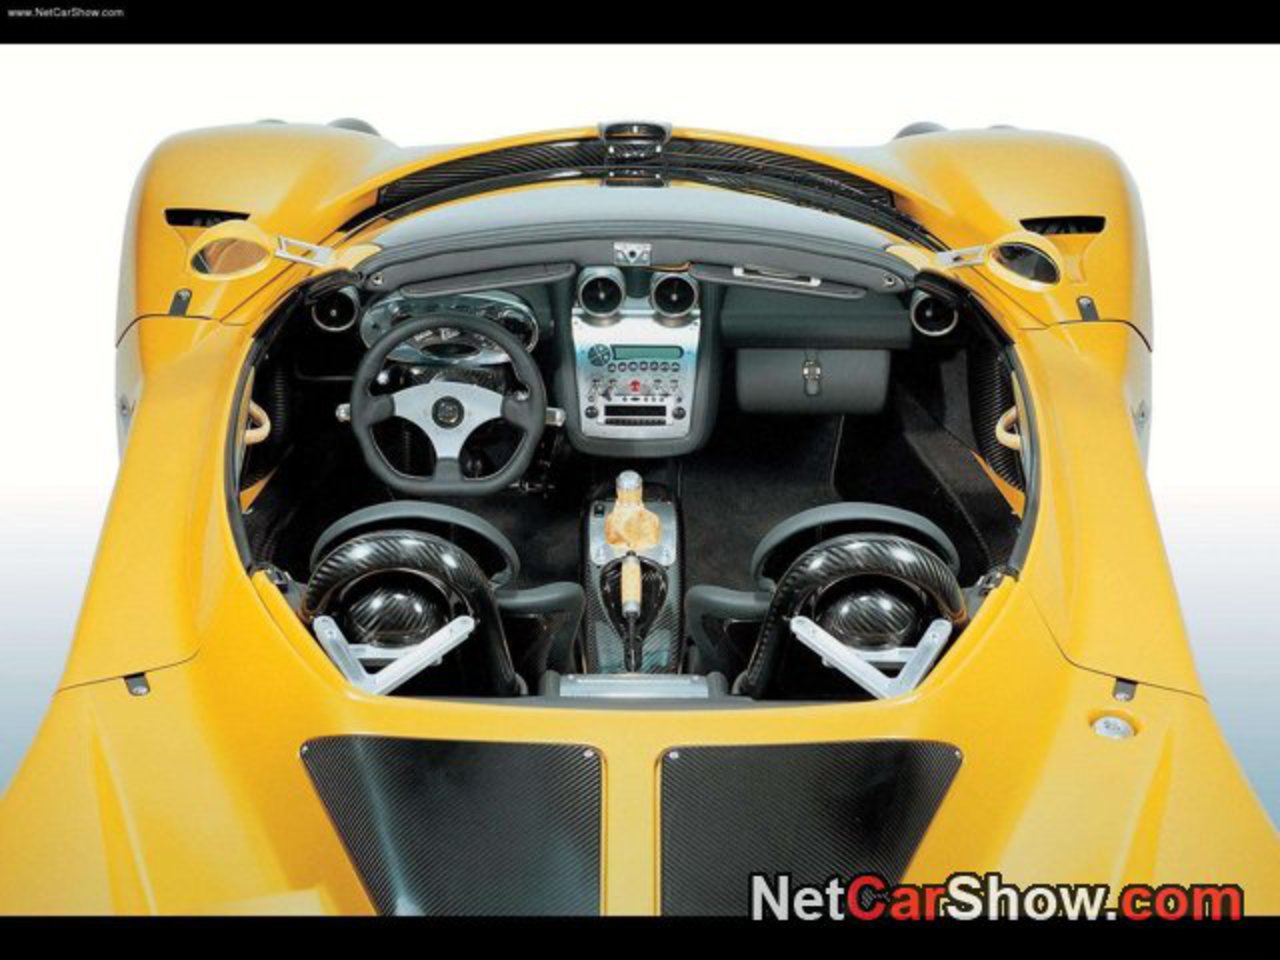 Pagani Zonda C12-S Roadster picture # 06 of 06, Interior, MY 2003 ...